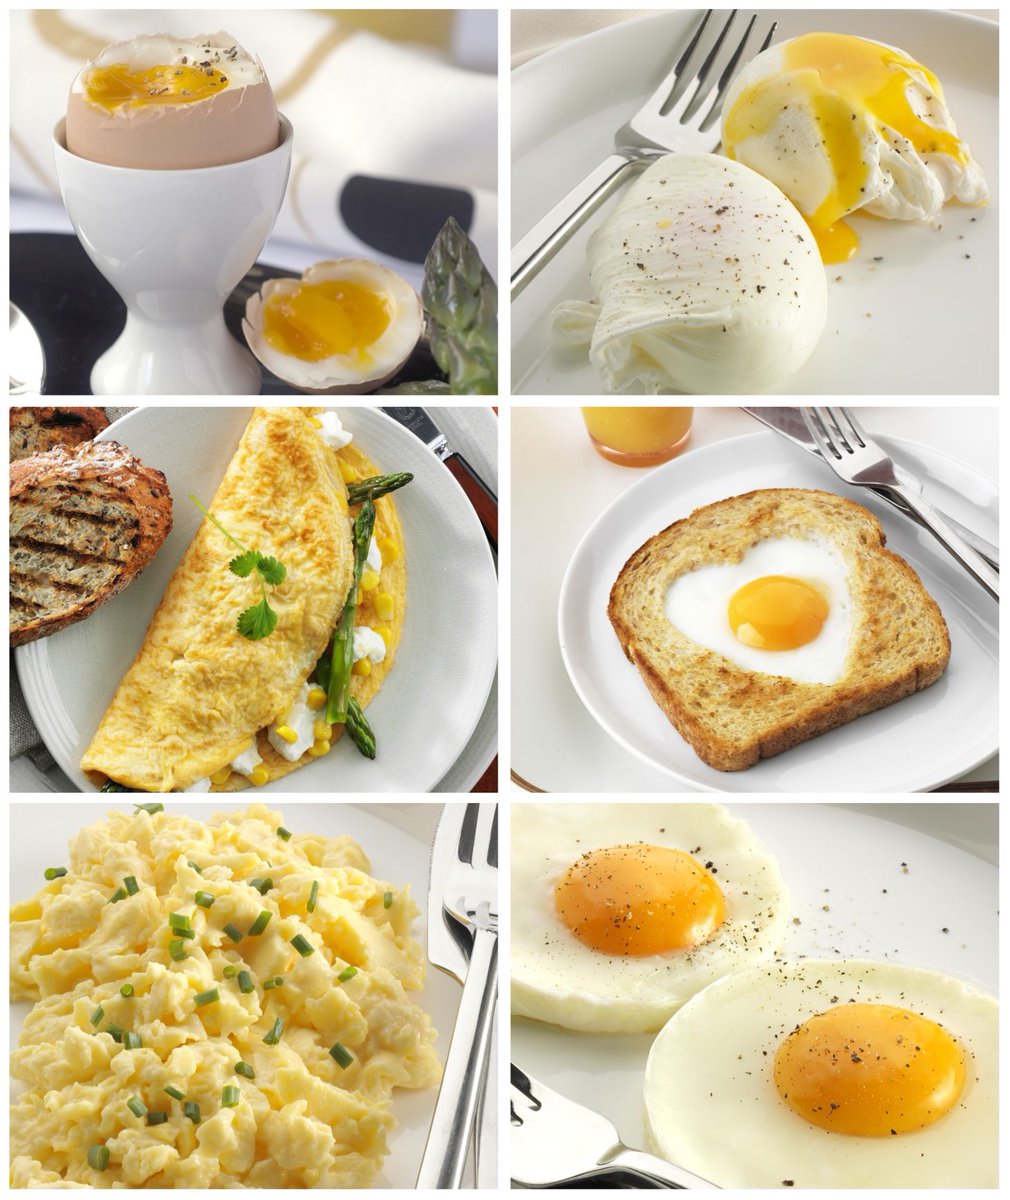 Что приготовить на завтрак быстро и вкусно рецепты с фото